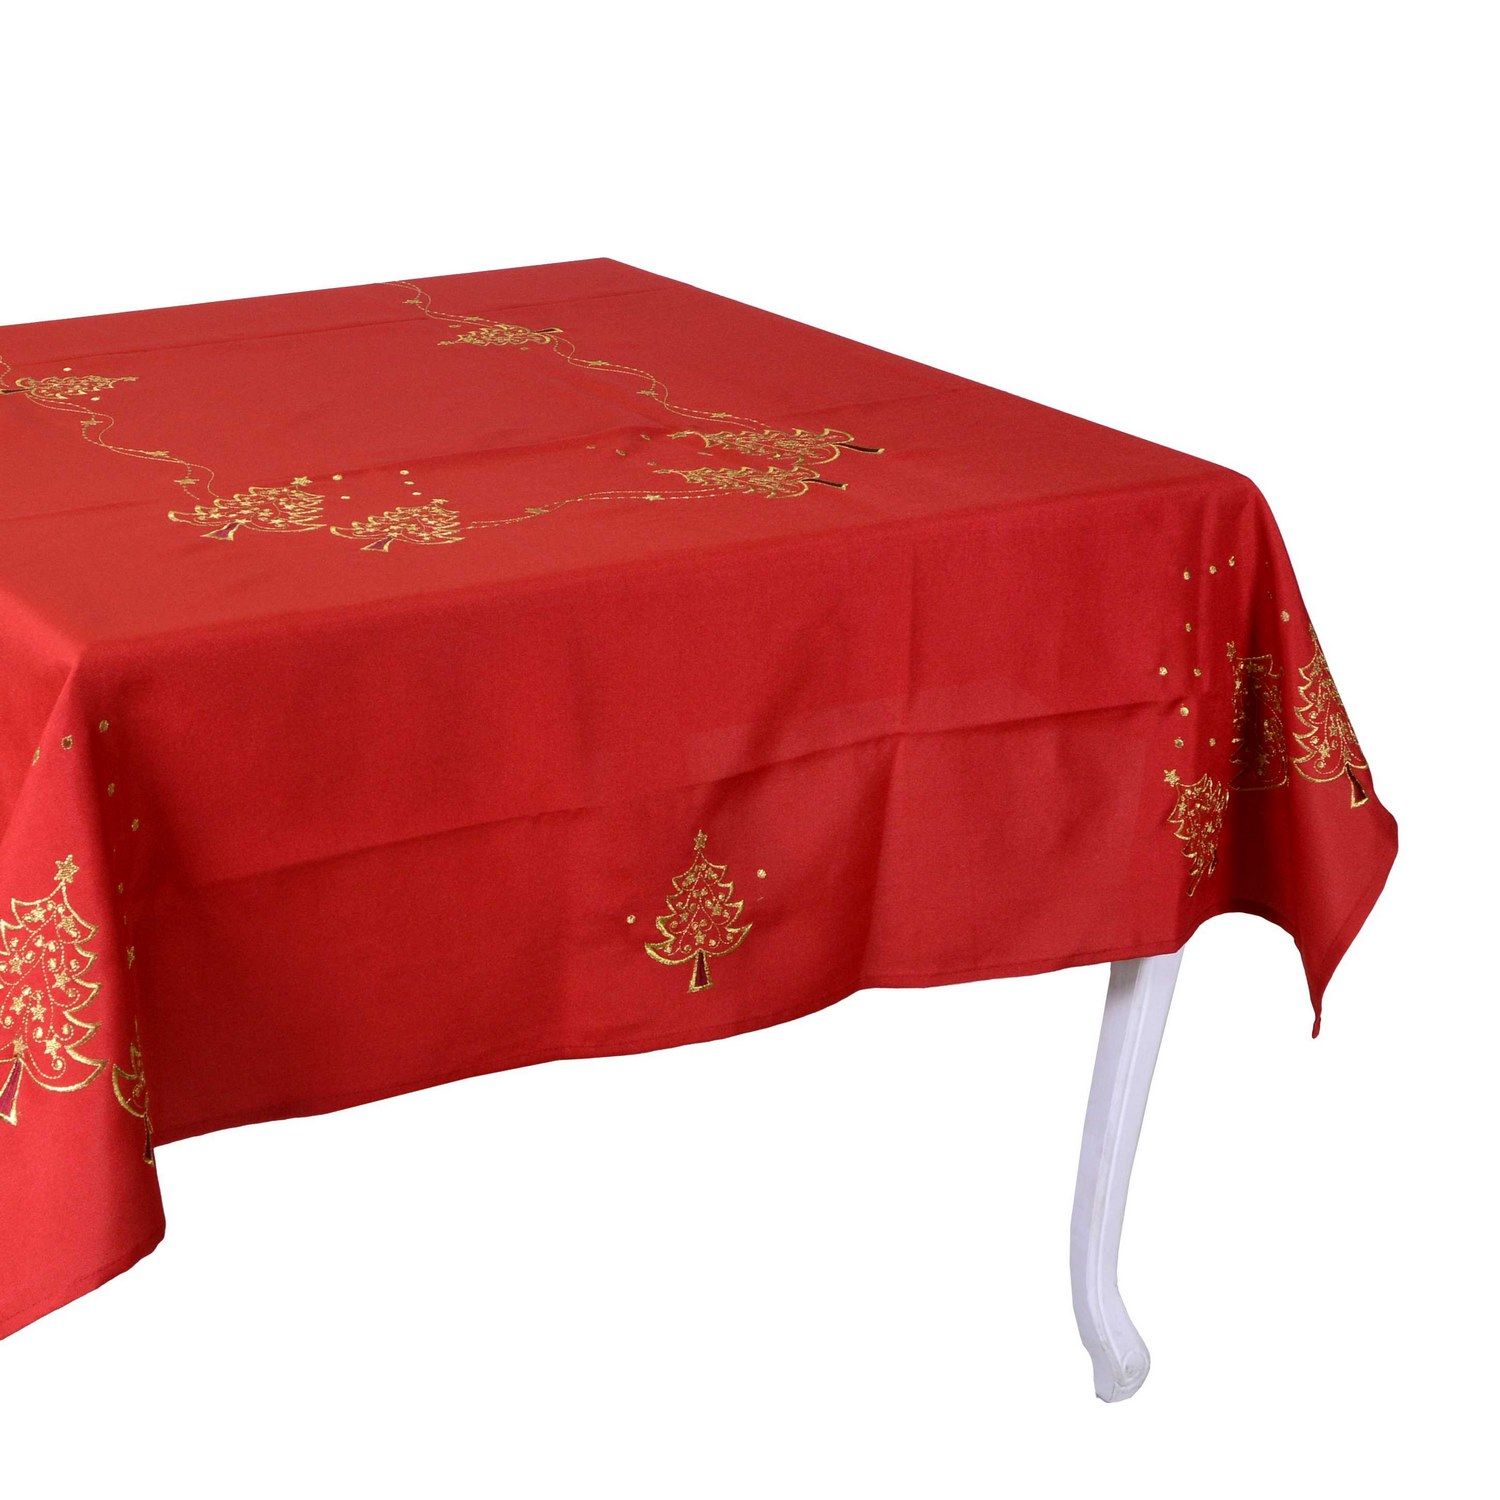 Acquista Vacchetti Tovaglia Natalizia Tessuto rosso 140x180 cm in Offerta a  46.1€ su BricoNow